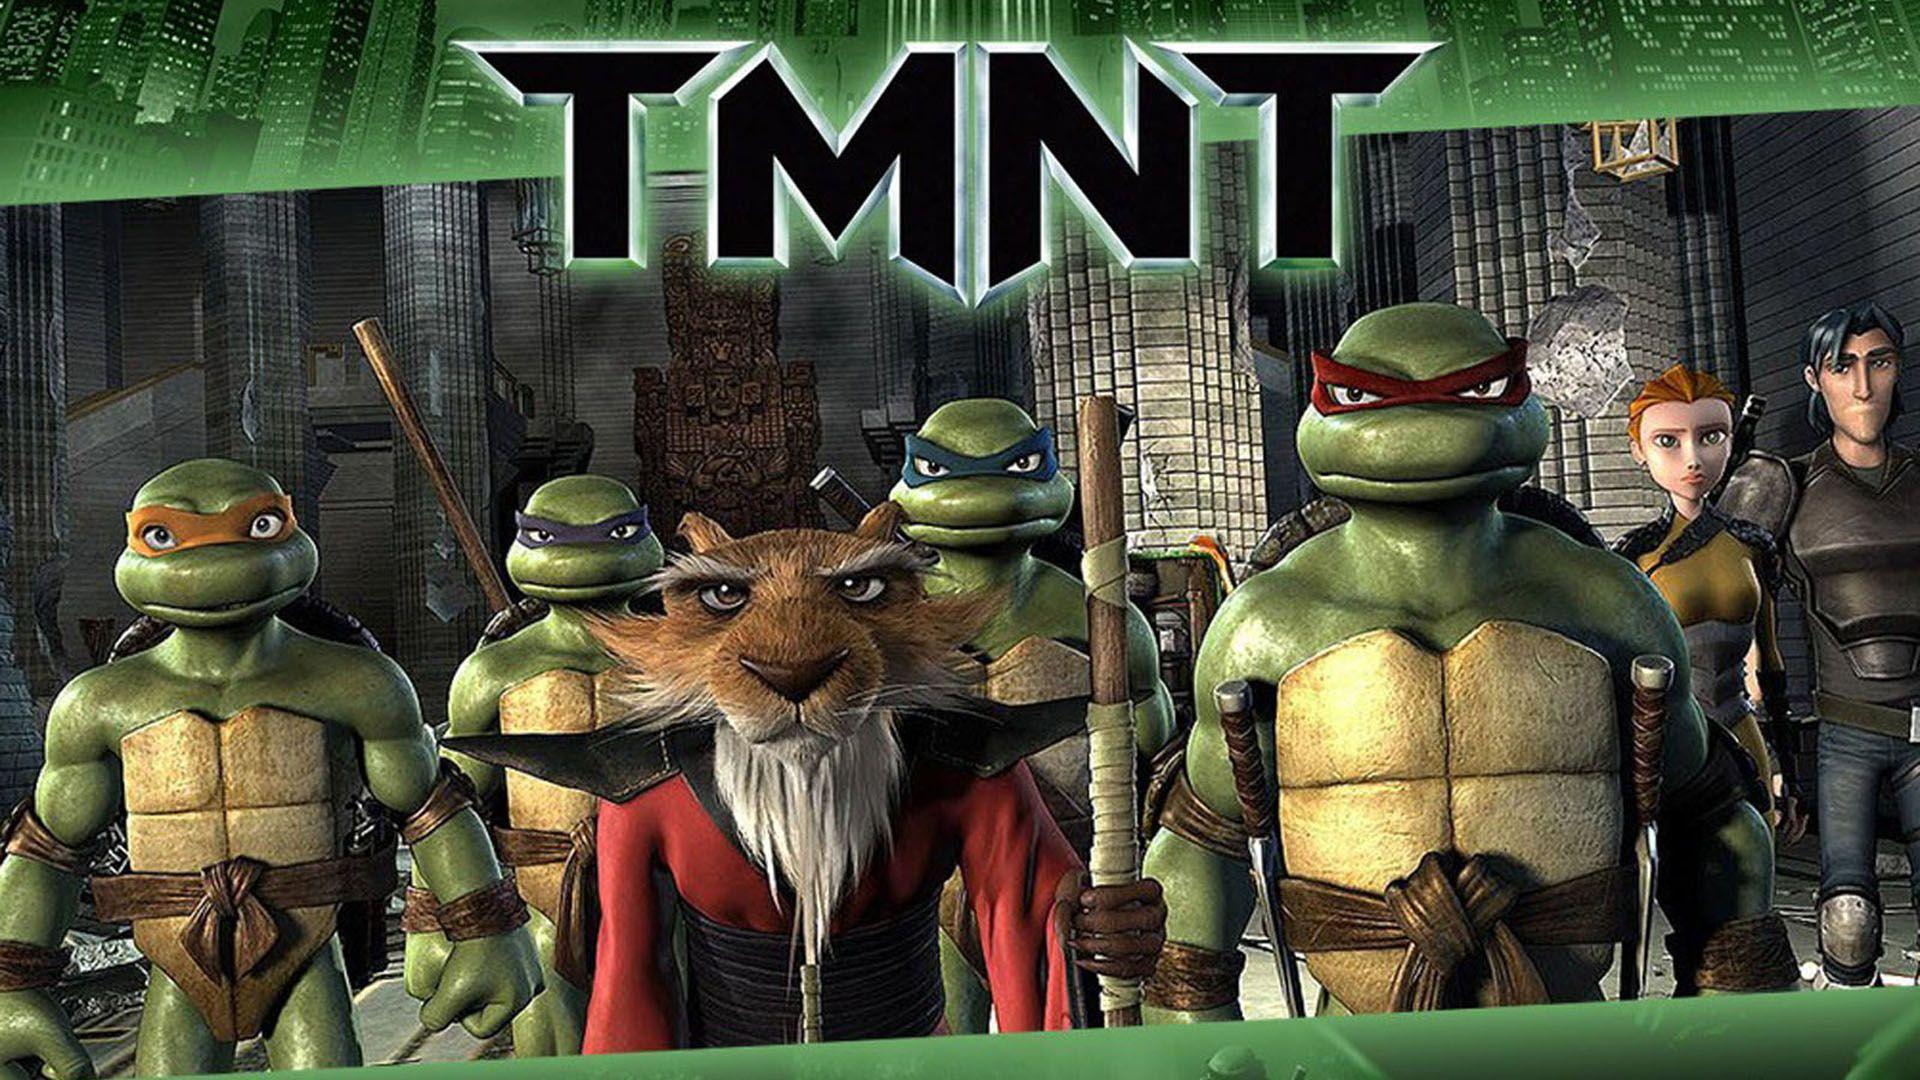 Teenage Mutant Ninja Turtles (TMNT) Movie HD Image Wallpaper for iPhone 6